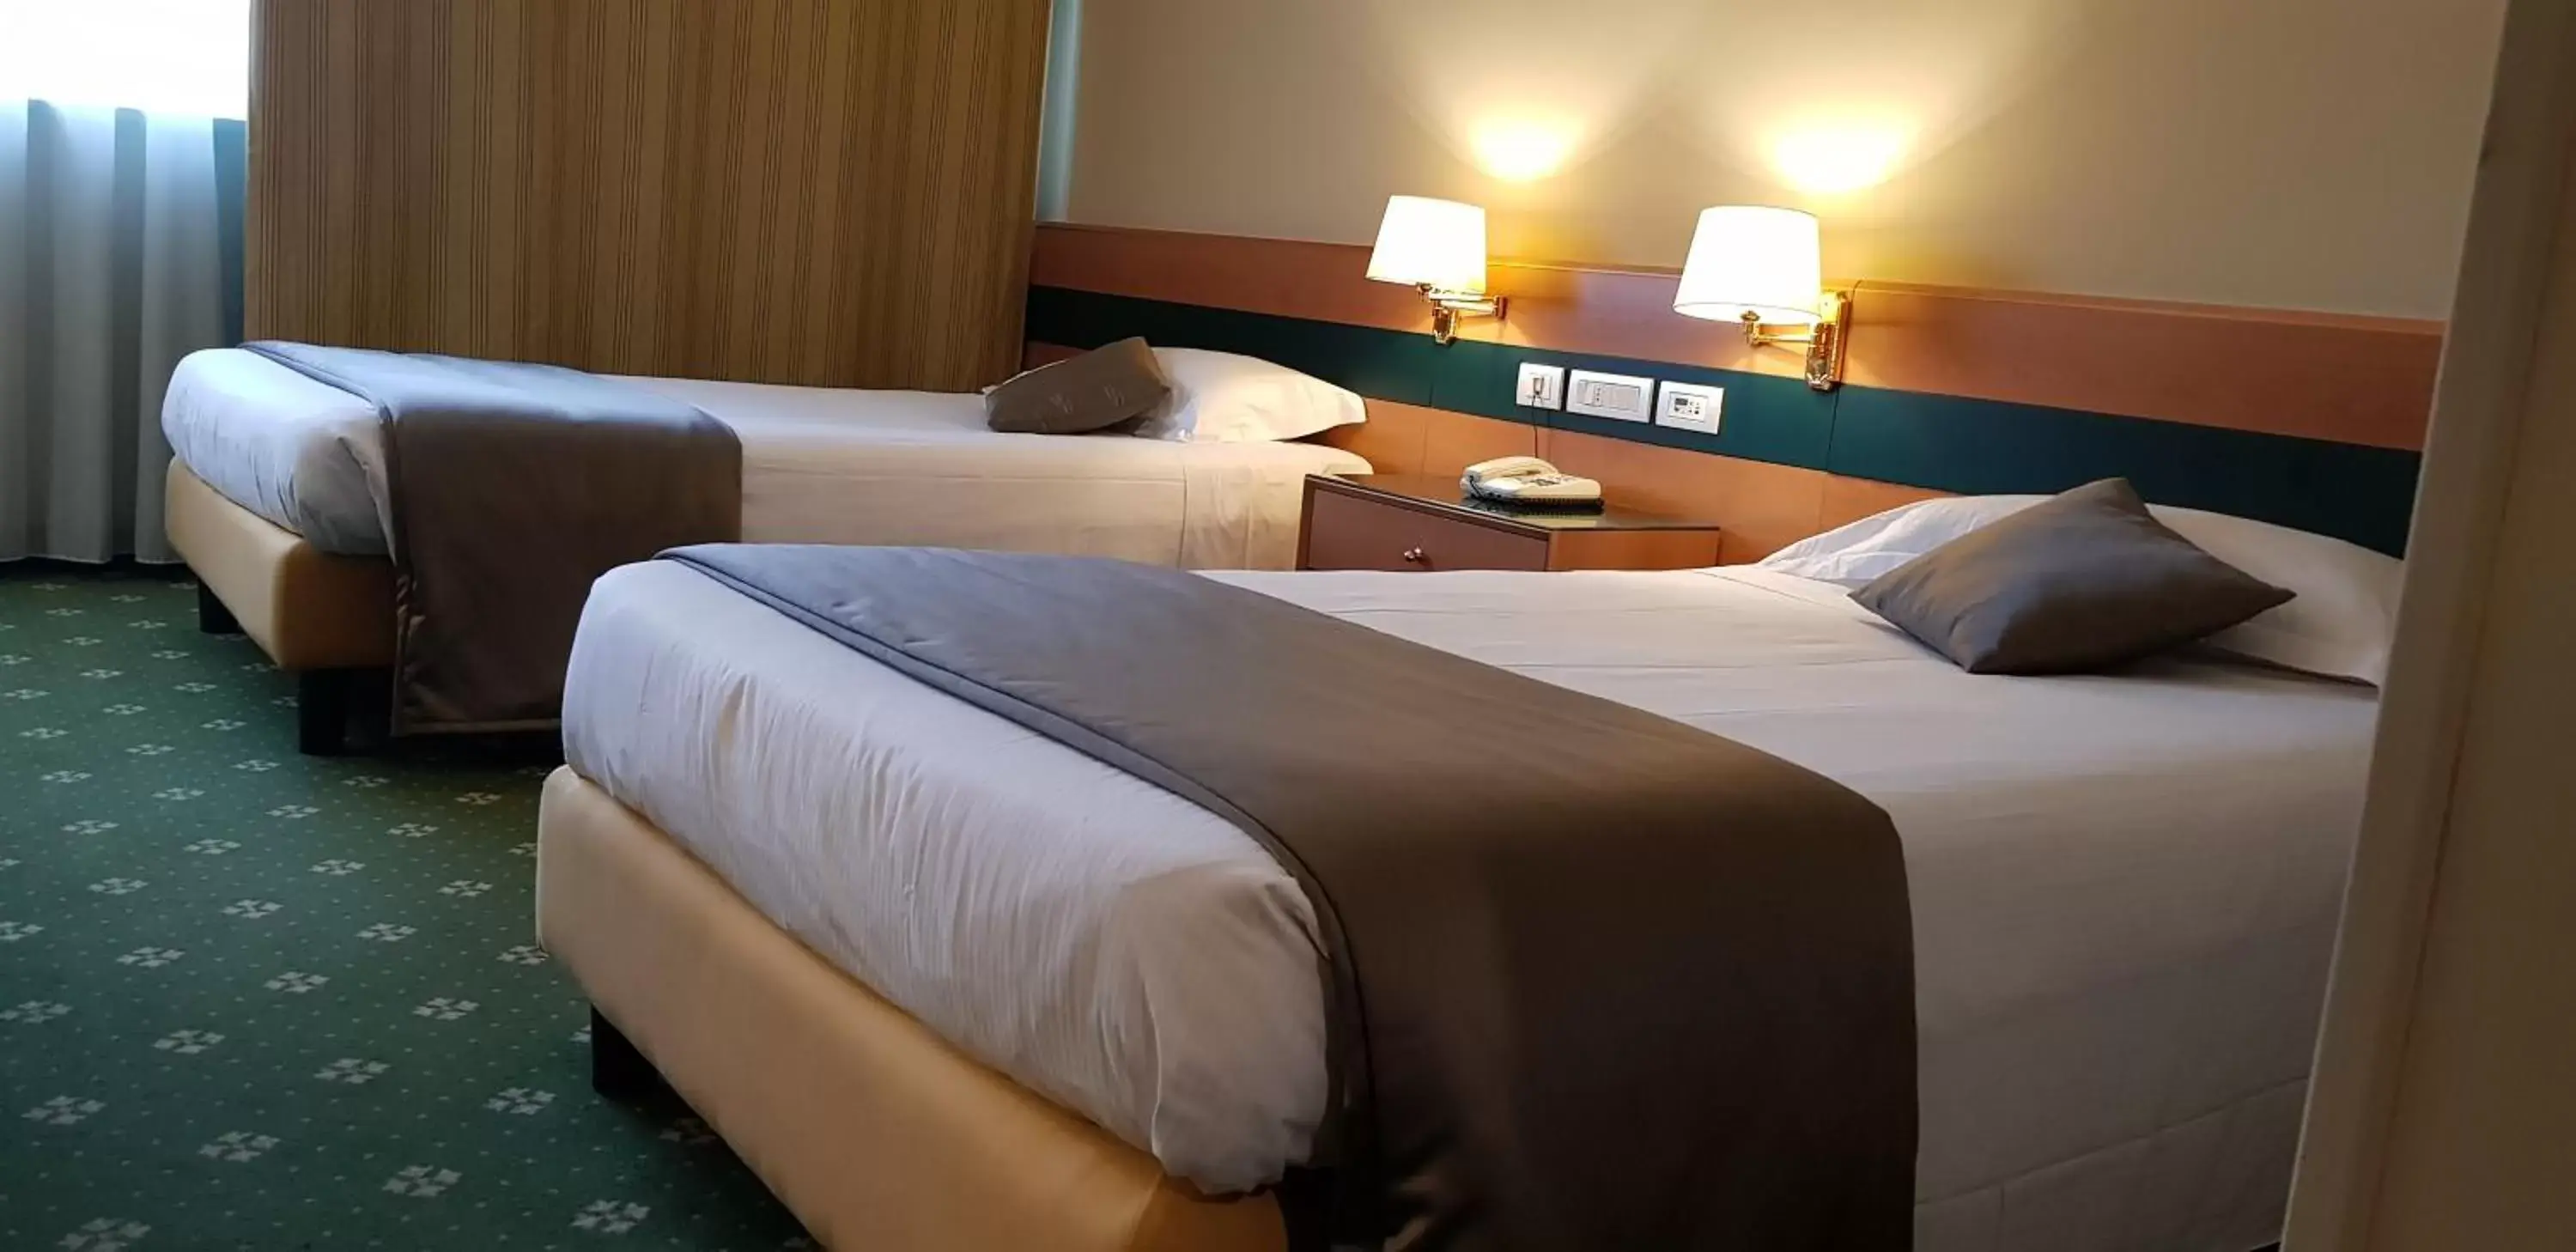 Bed in BV Hotel Oly